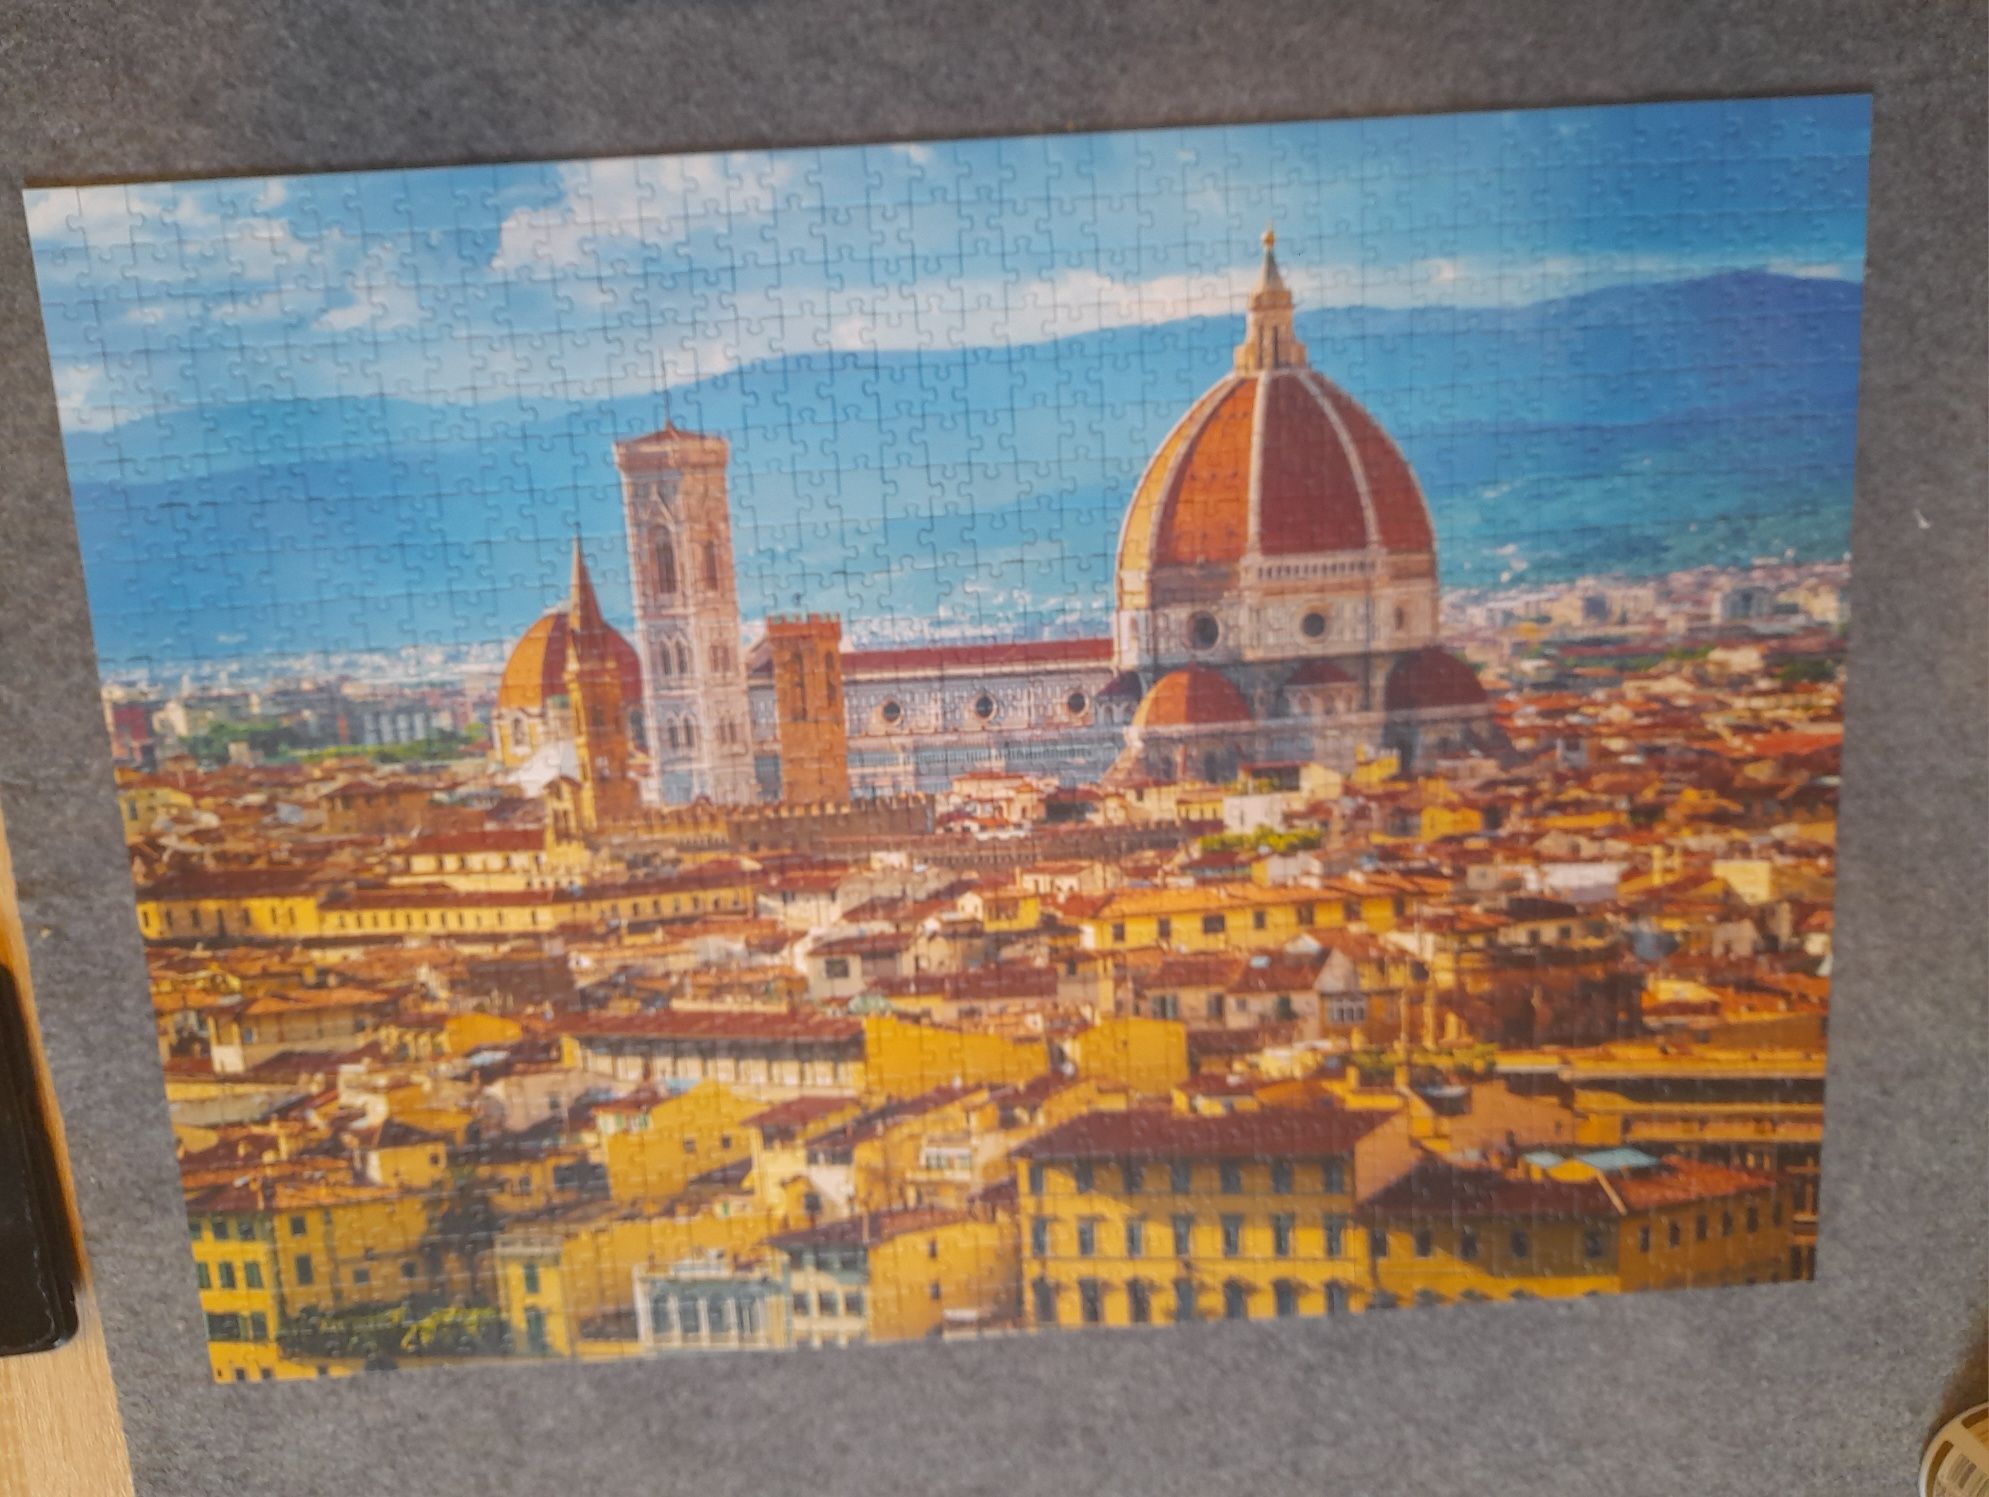 Puzzle 1000 Florencja Włochy